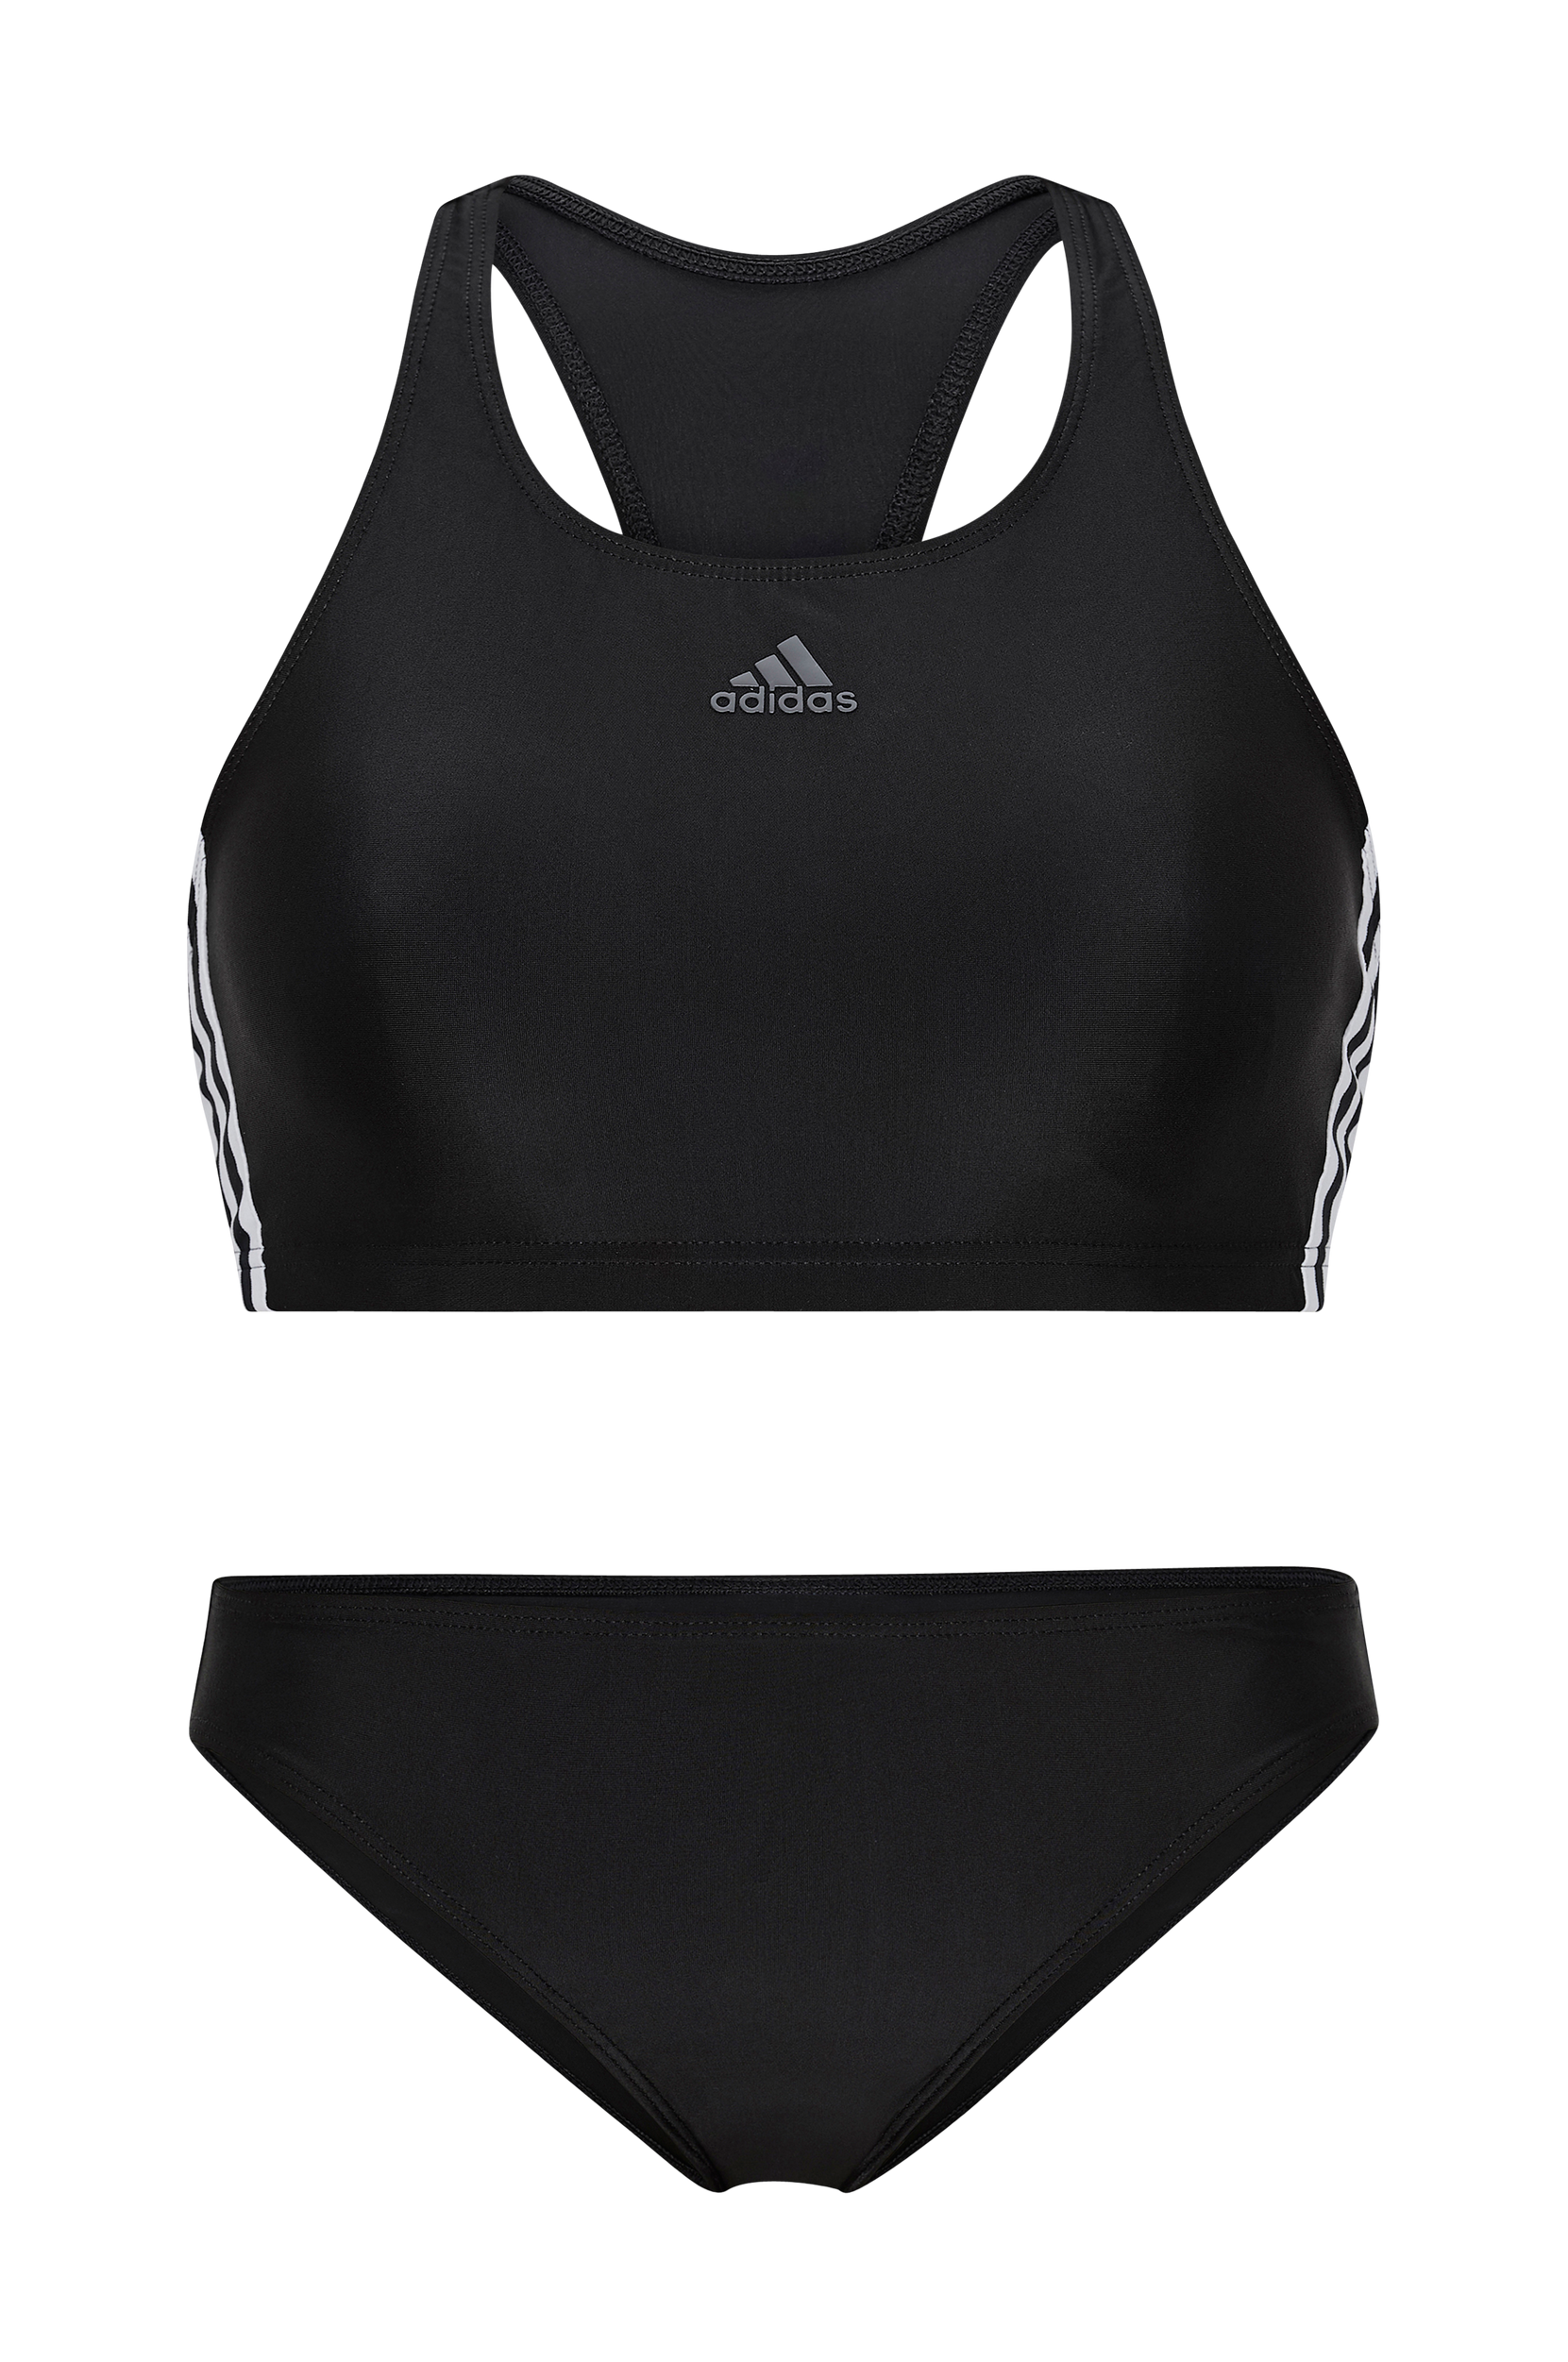 adidas Sport Performance - Bikini 3-stripes - Sort - 40/42